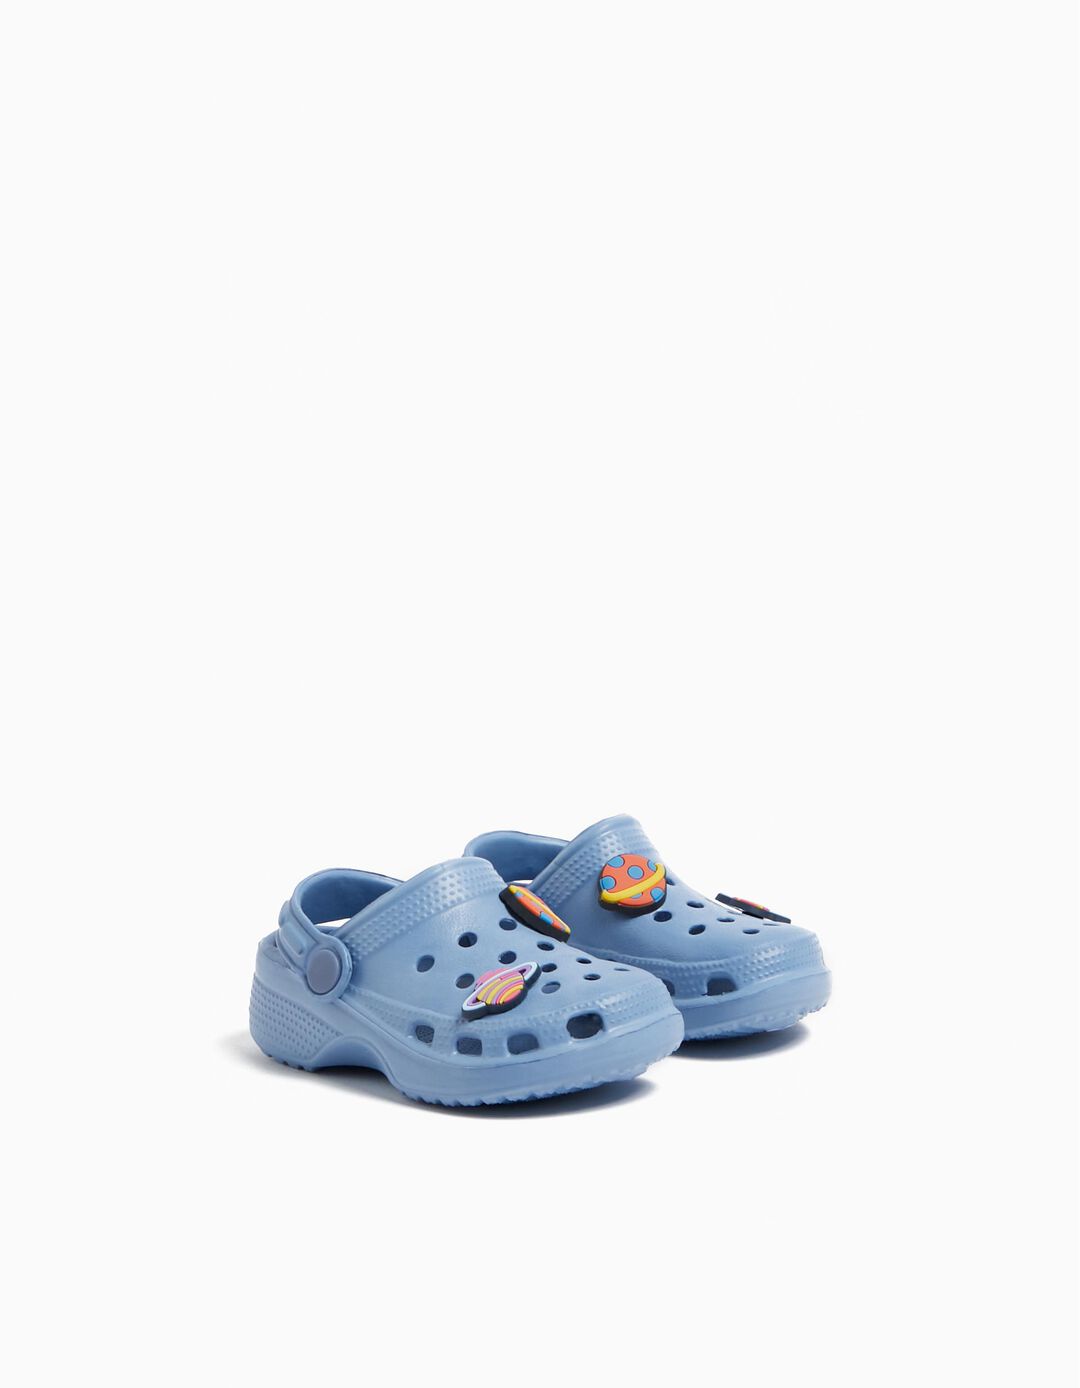 Sandálias de Borracha, Bebé Menino, Azul Claro